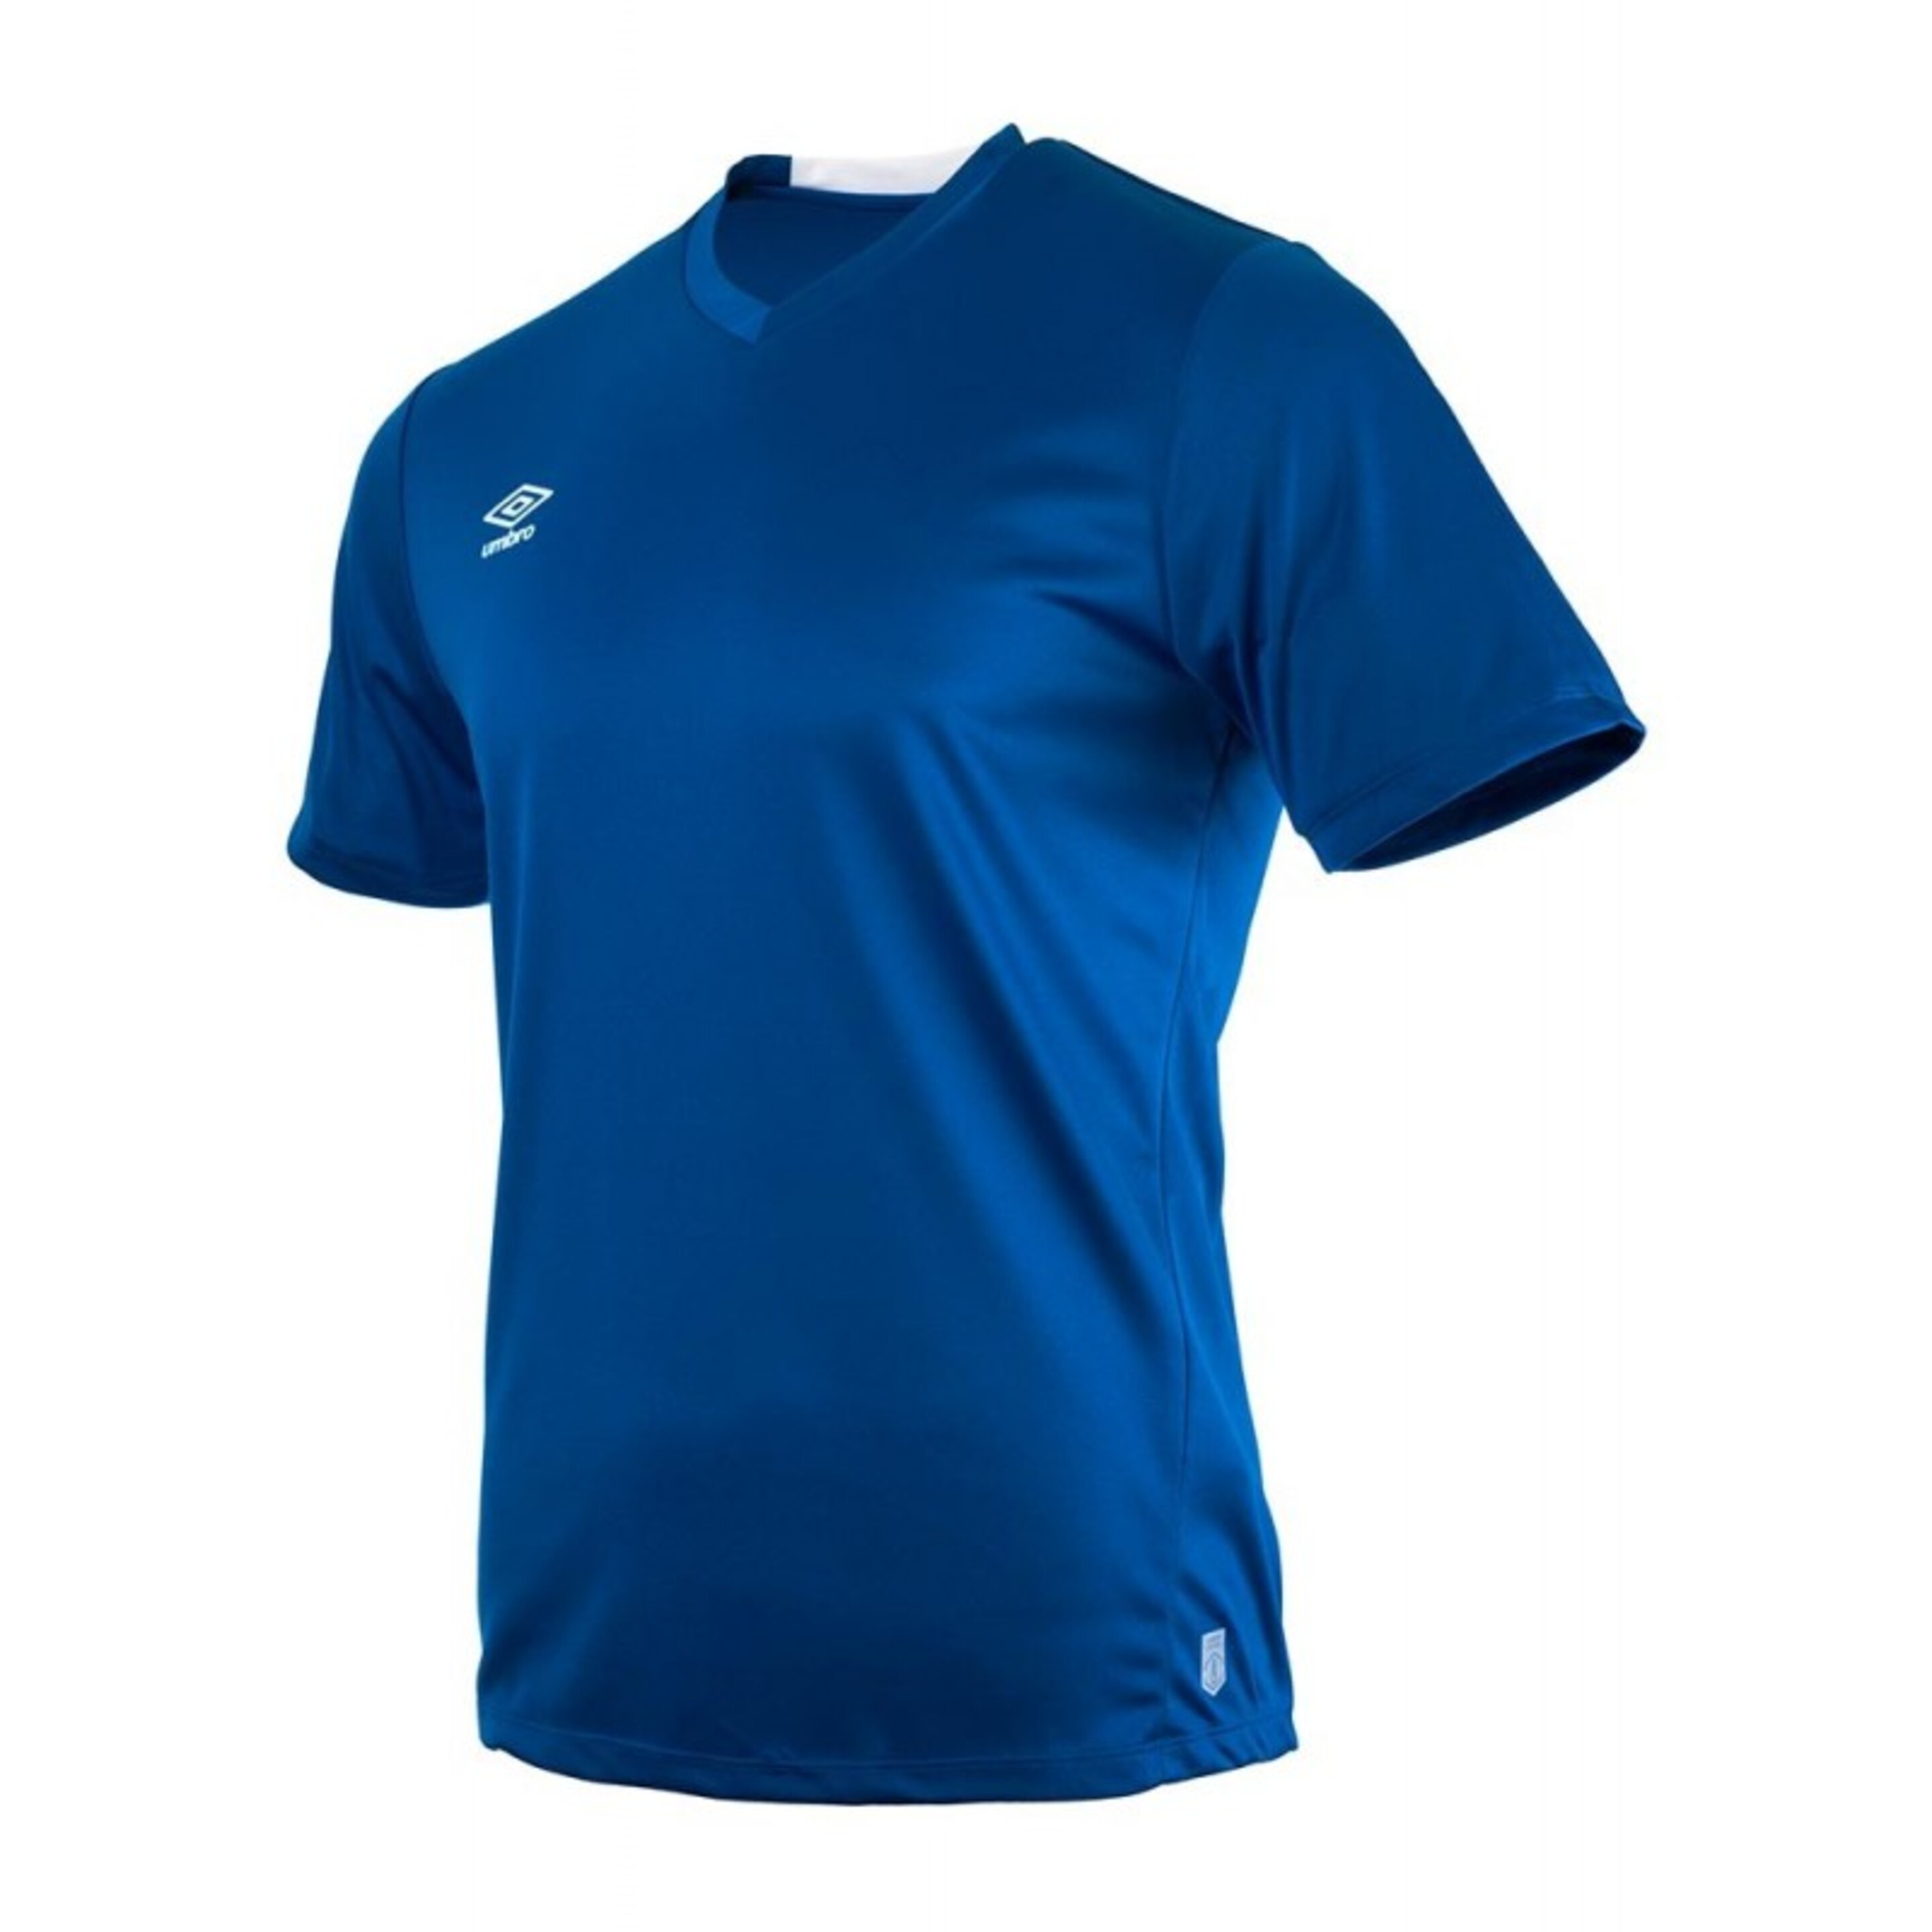 Camiseta Fw Vee Training Jersey Azul